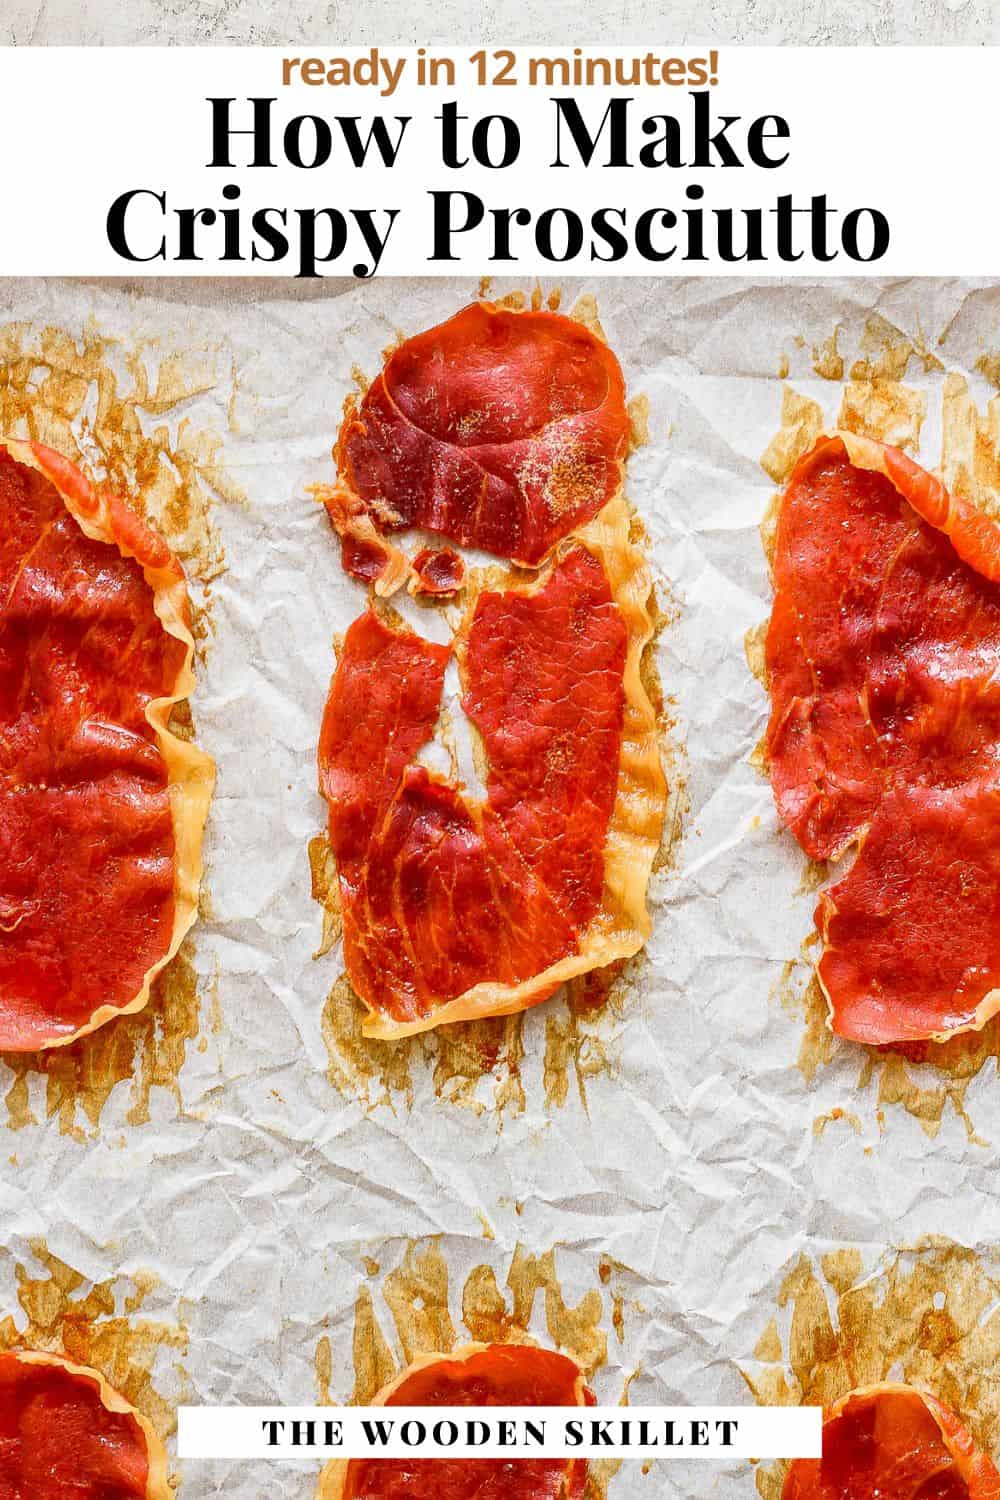 Pinterest image for crispy prosciutto.